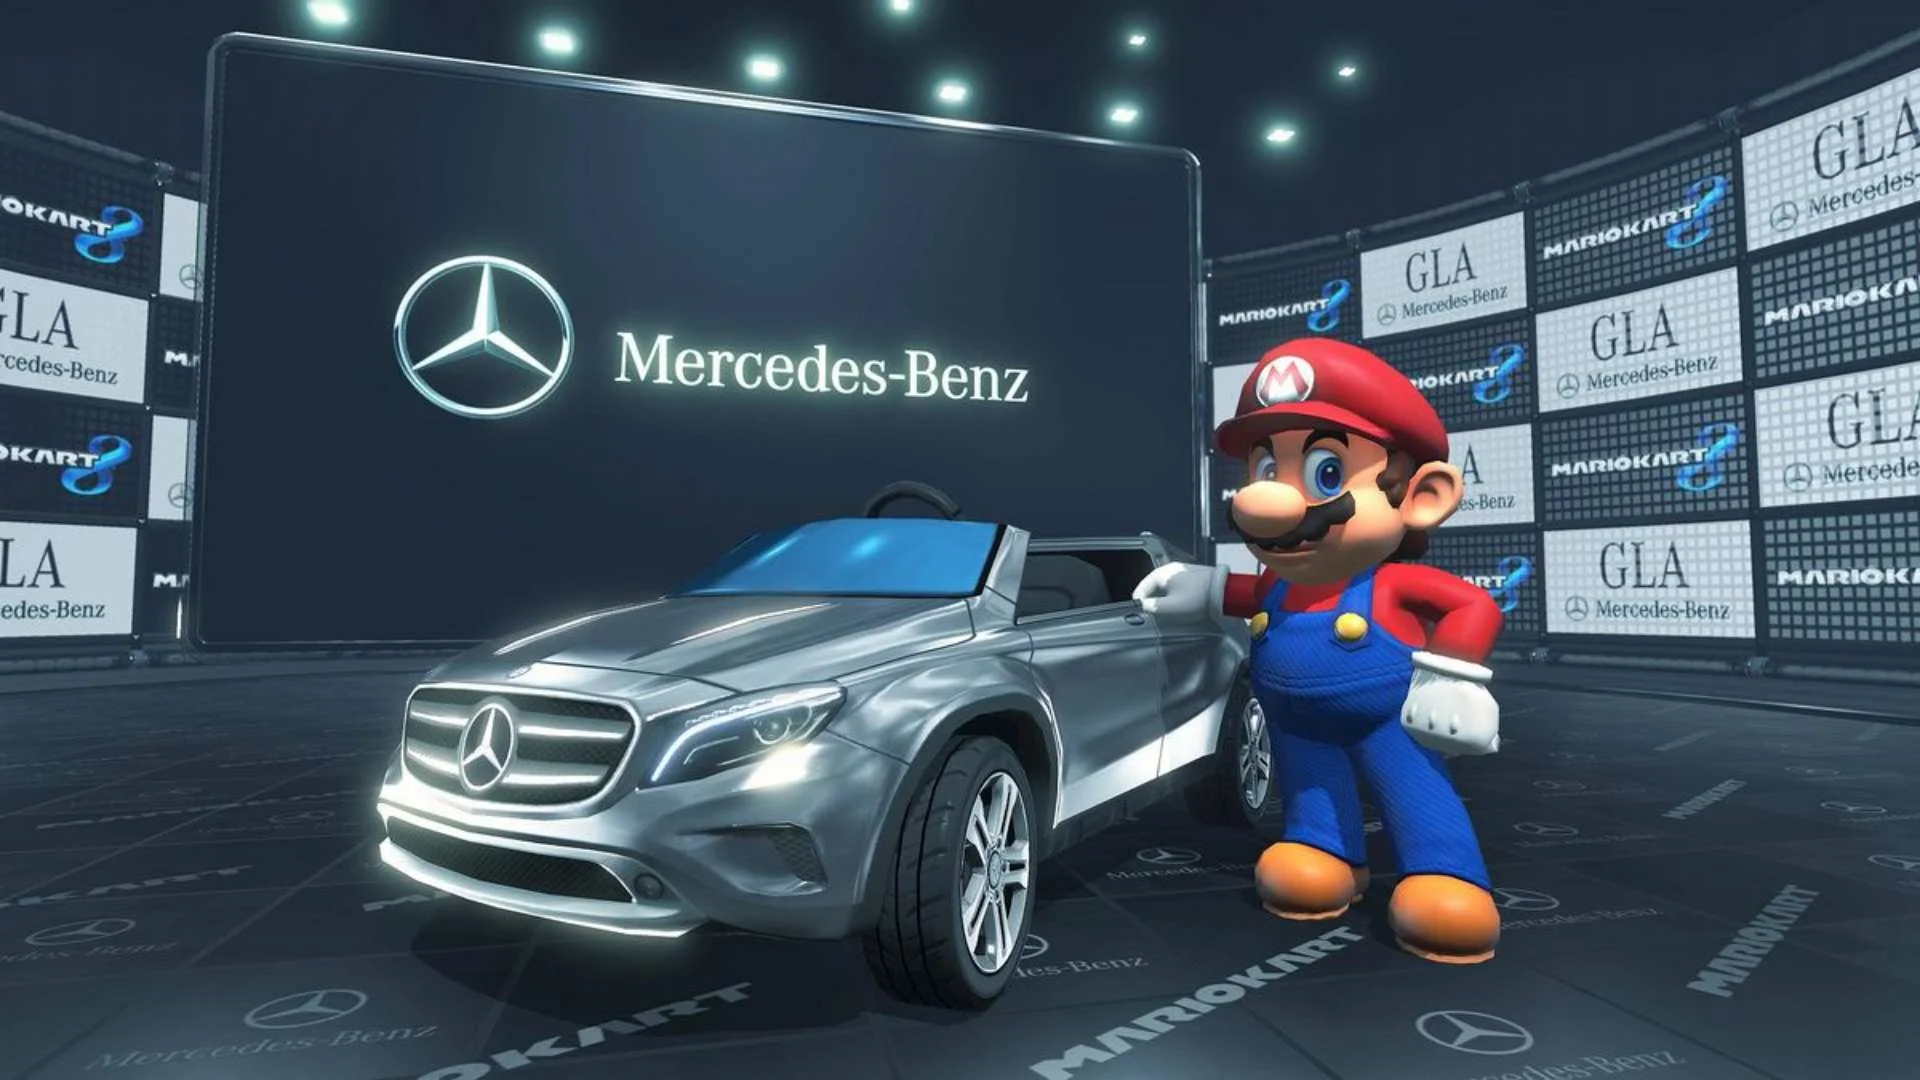 Сила продакт-плейсмента настолько велика, что усадила Марио за копию настоящей Mercedes-Benz / Изображение из фанатской энциклопедии про Super Mario